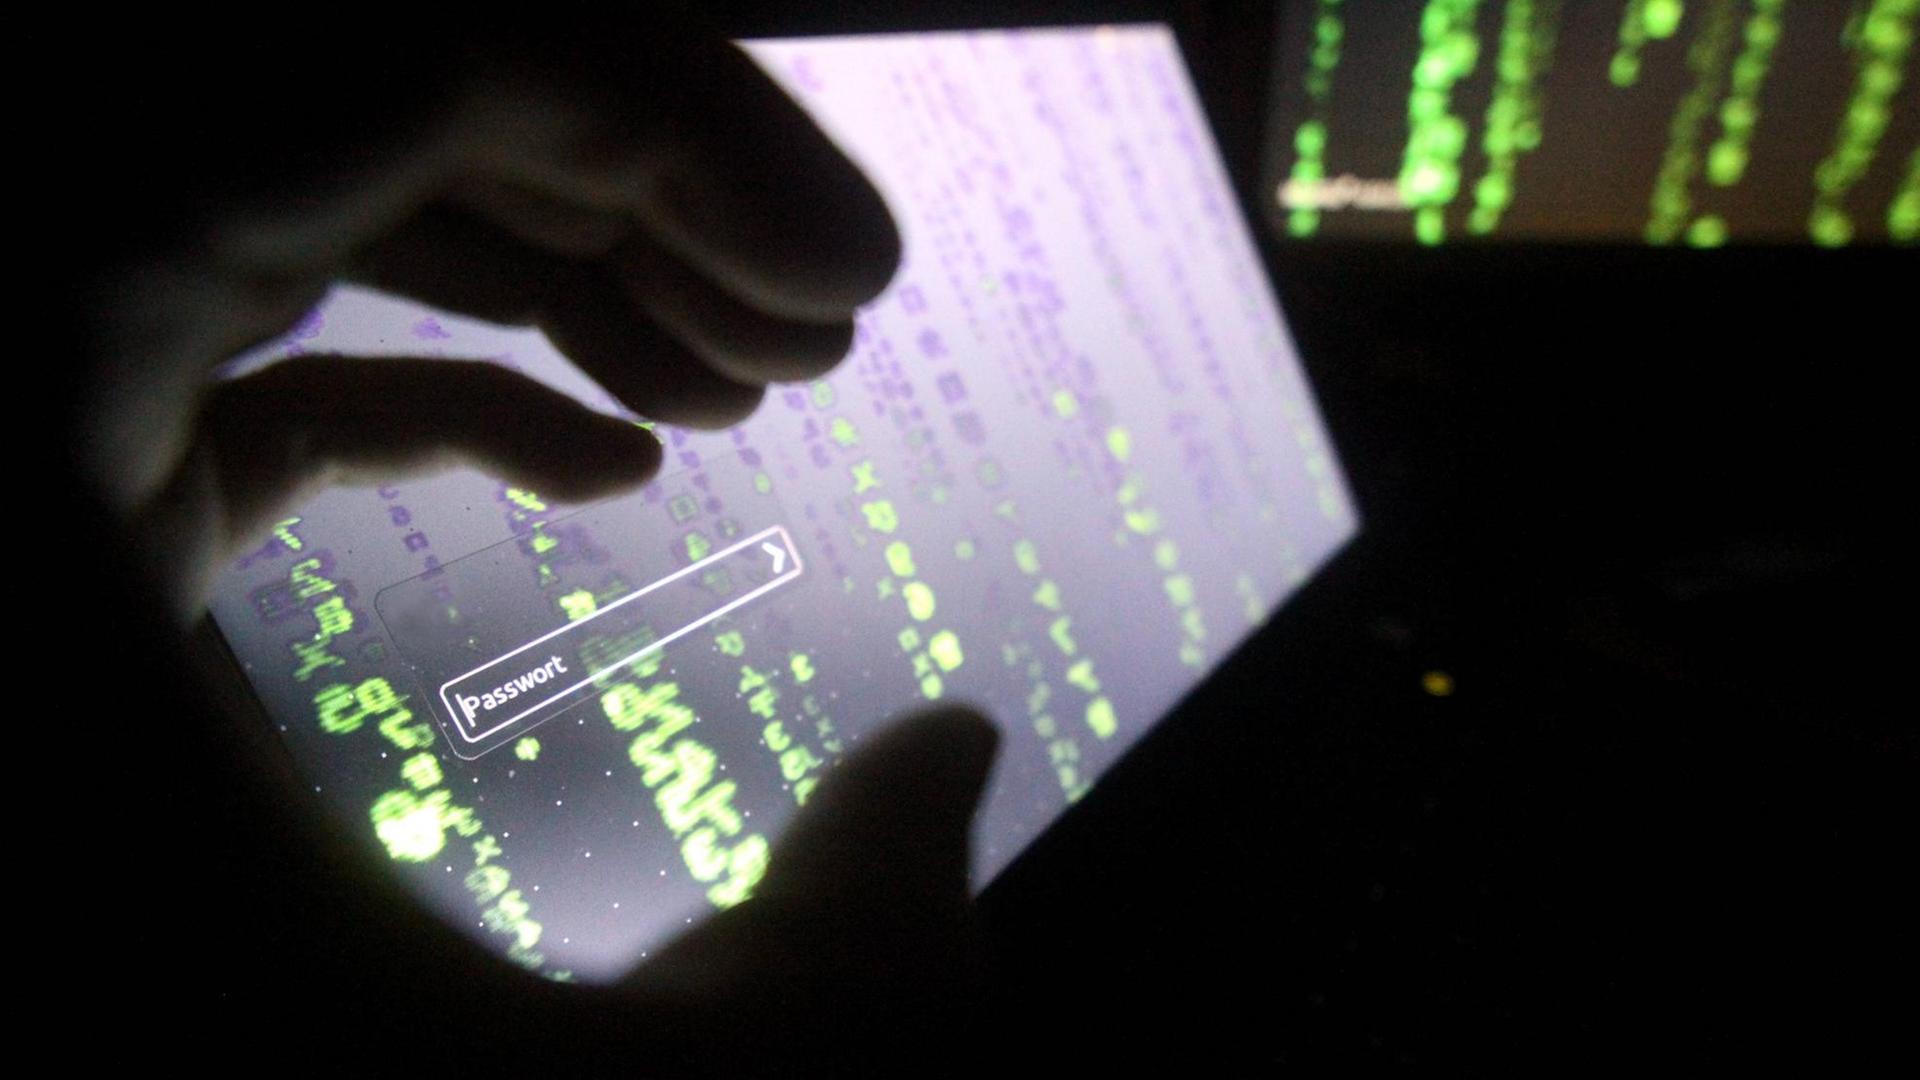 Über Spear-Phishing, also personalisierte E-Mail Angriffe, sollen die russischen Hacker operiert haben